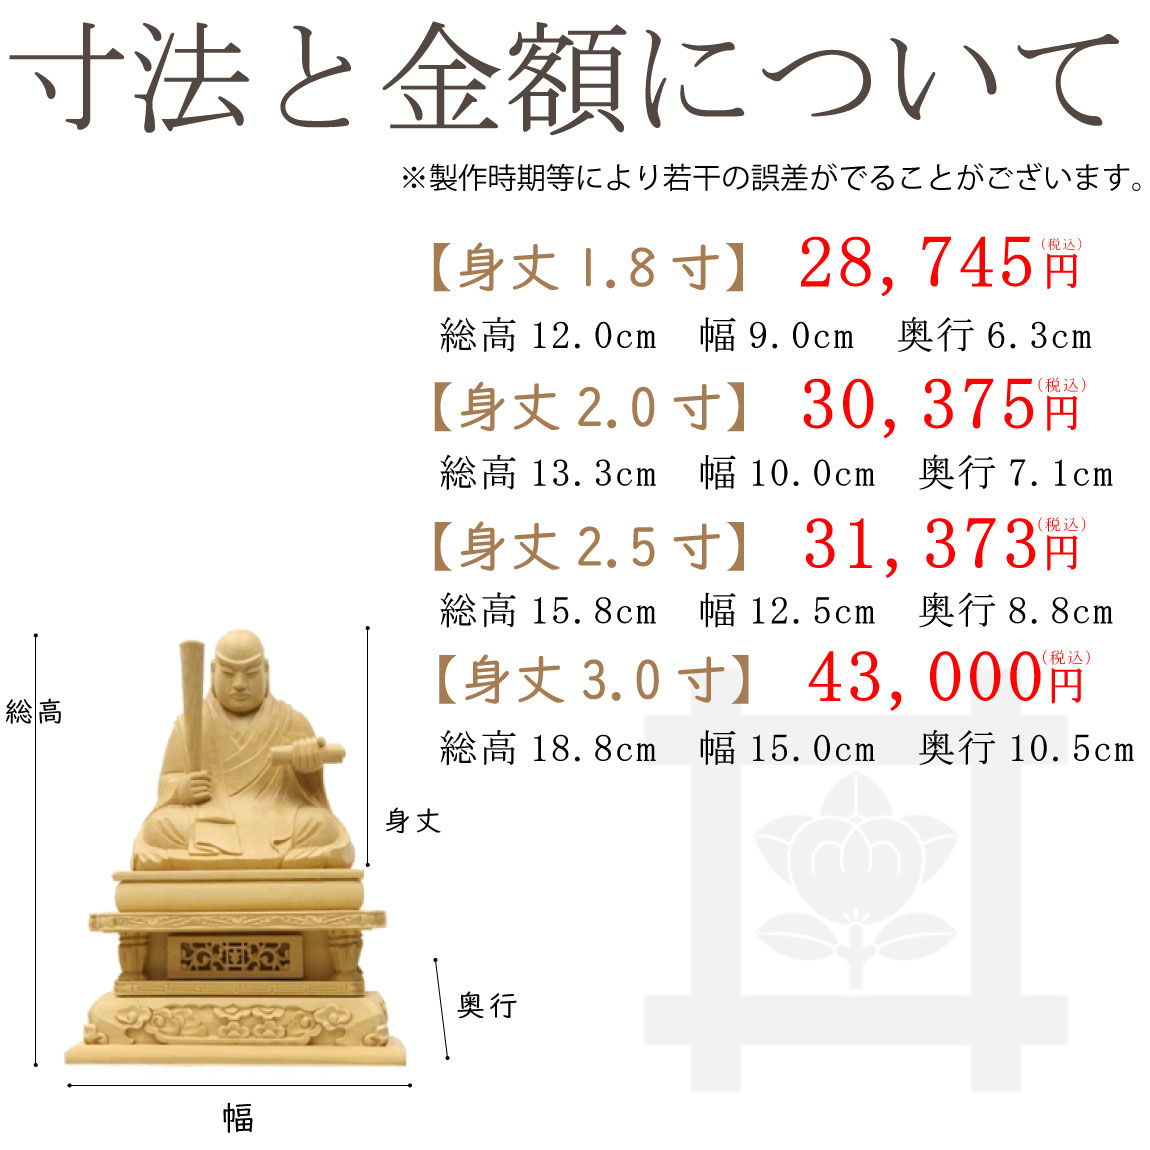 【日蓮宗】総柘植　日蓮聖人像のサイズと価格